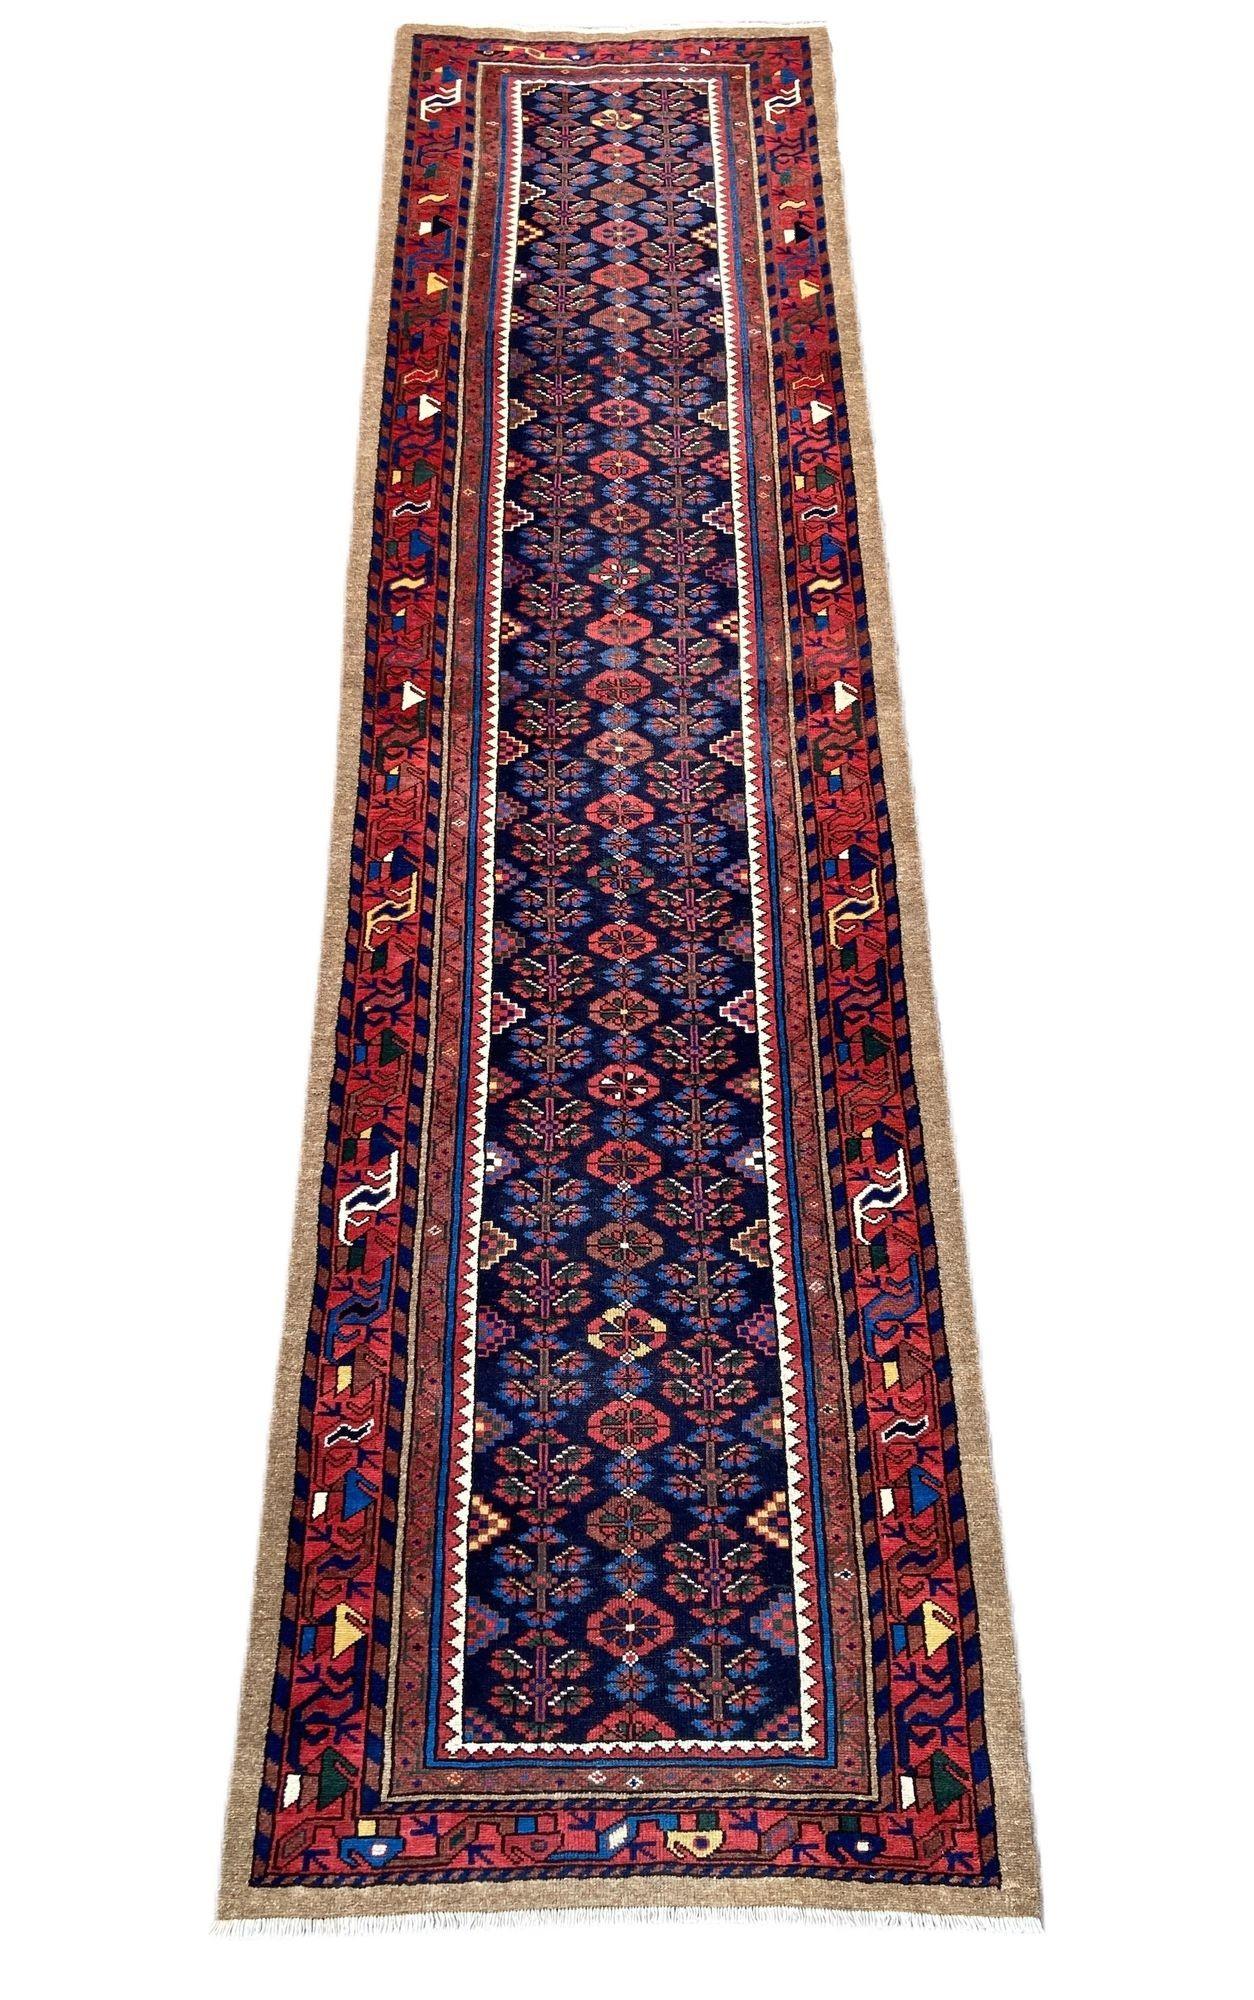 Magnifique chemin de table Hamadan ancien, tissé à la main dans l'ouest de la Perse vers 1910, avec un motif de fleurs stylisées sur un riche champ indigo et une bordure rouge. La qualité de la laine est excellente et les couleurs secondaires sont